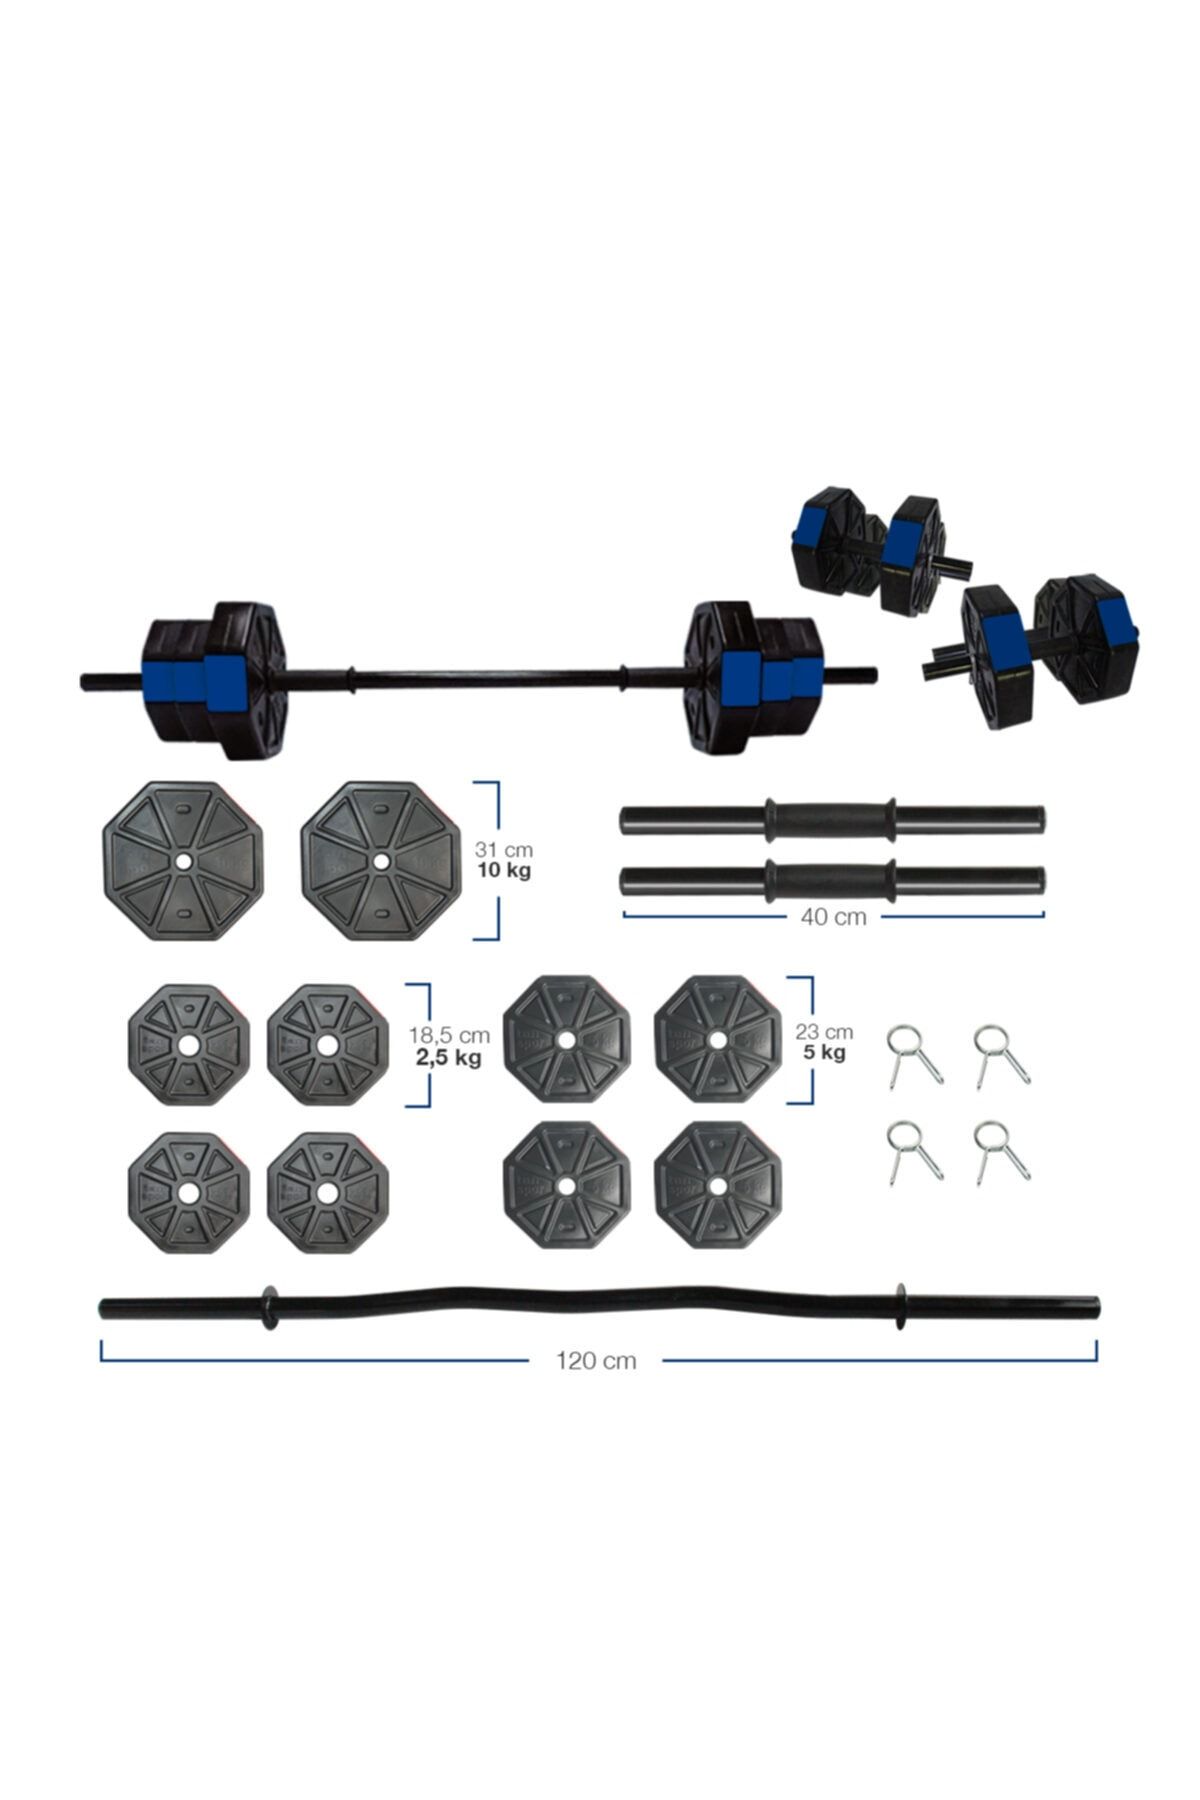 TAN SPOR 50 Kg Z Barlı ( 120 Cm) Dambıl - Dumbell - Ağırlık - Halter – Vücut Geliştirme Set Mavi Kapaklı